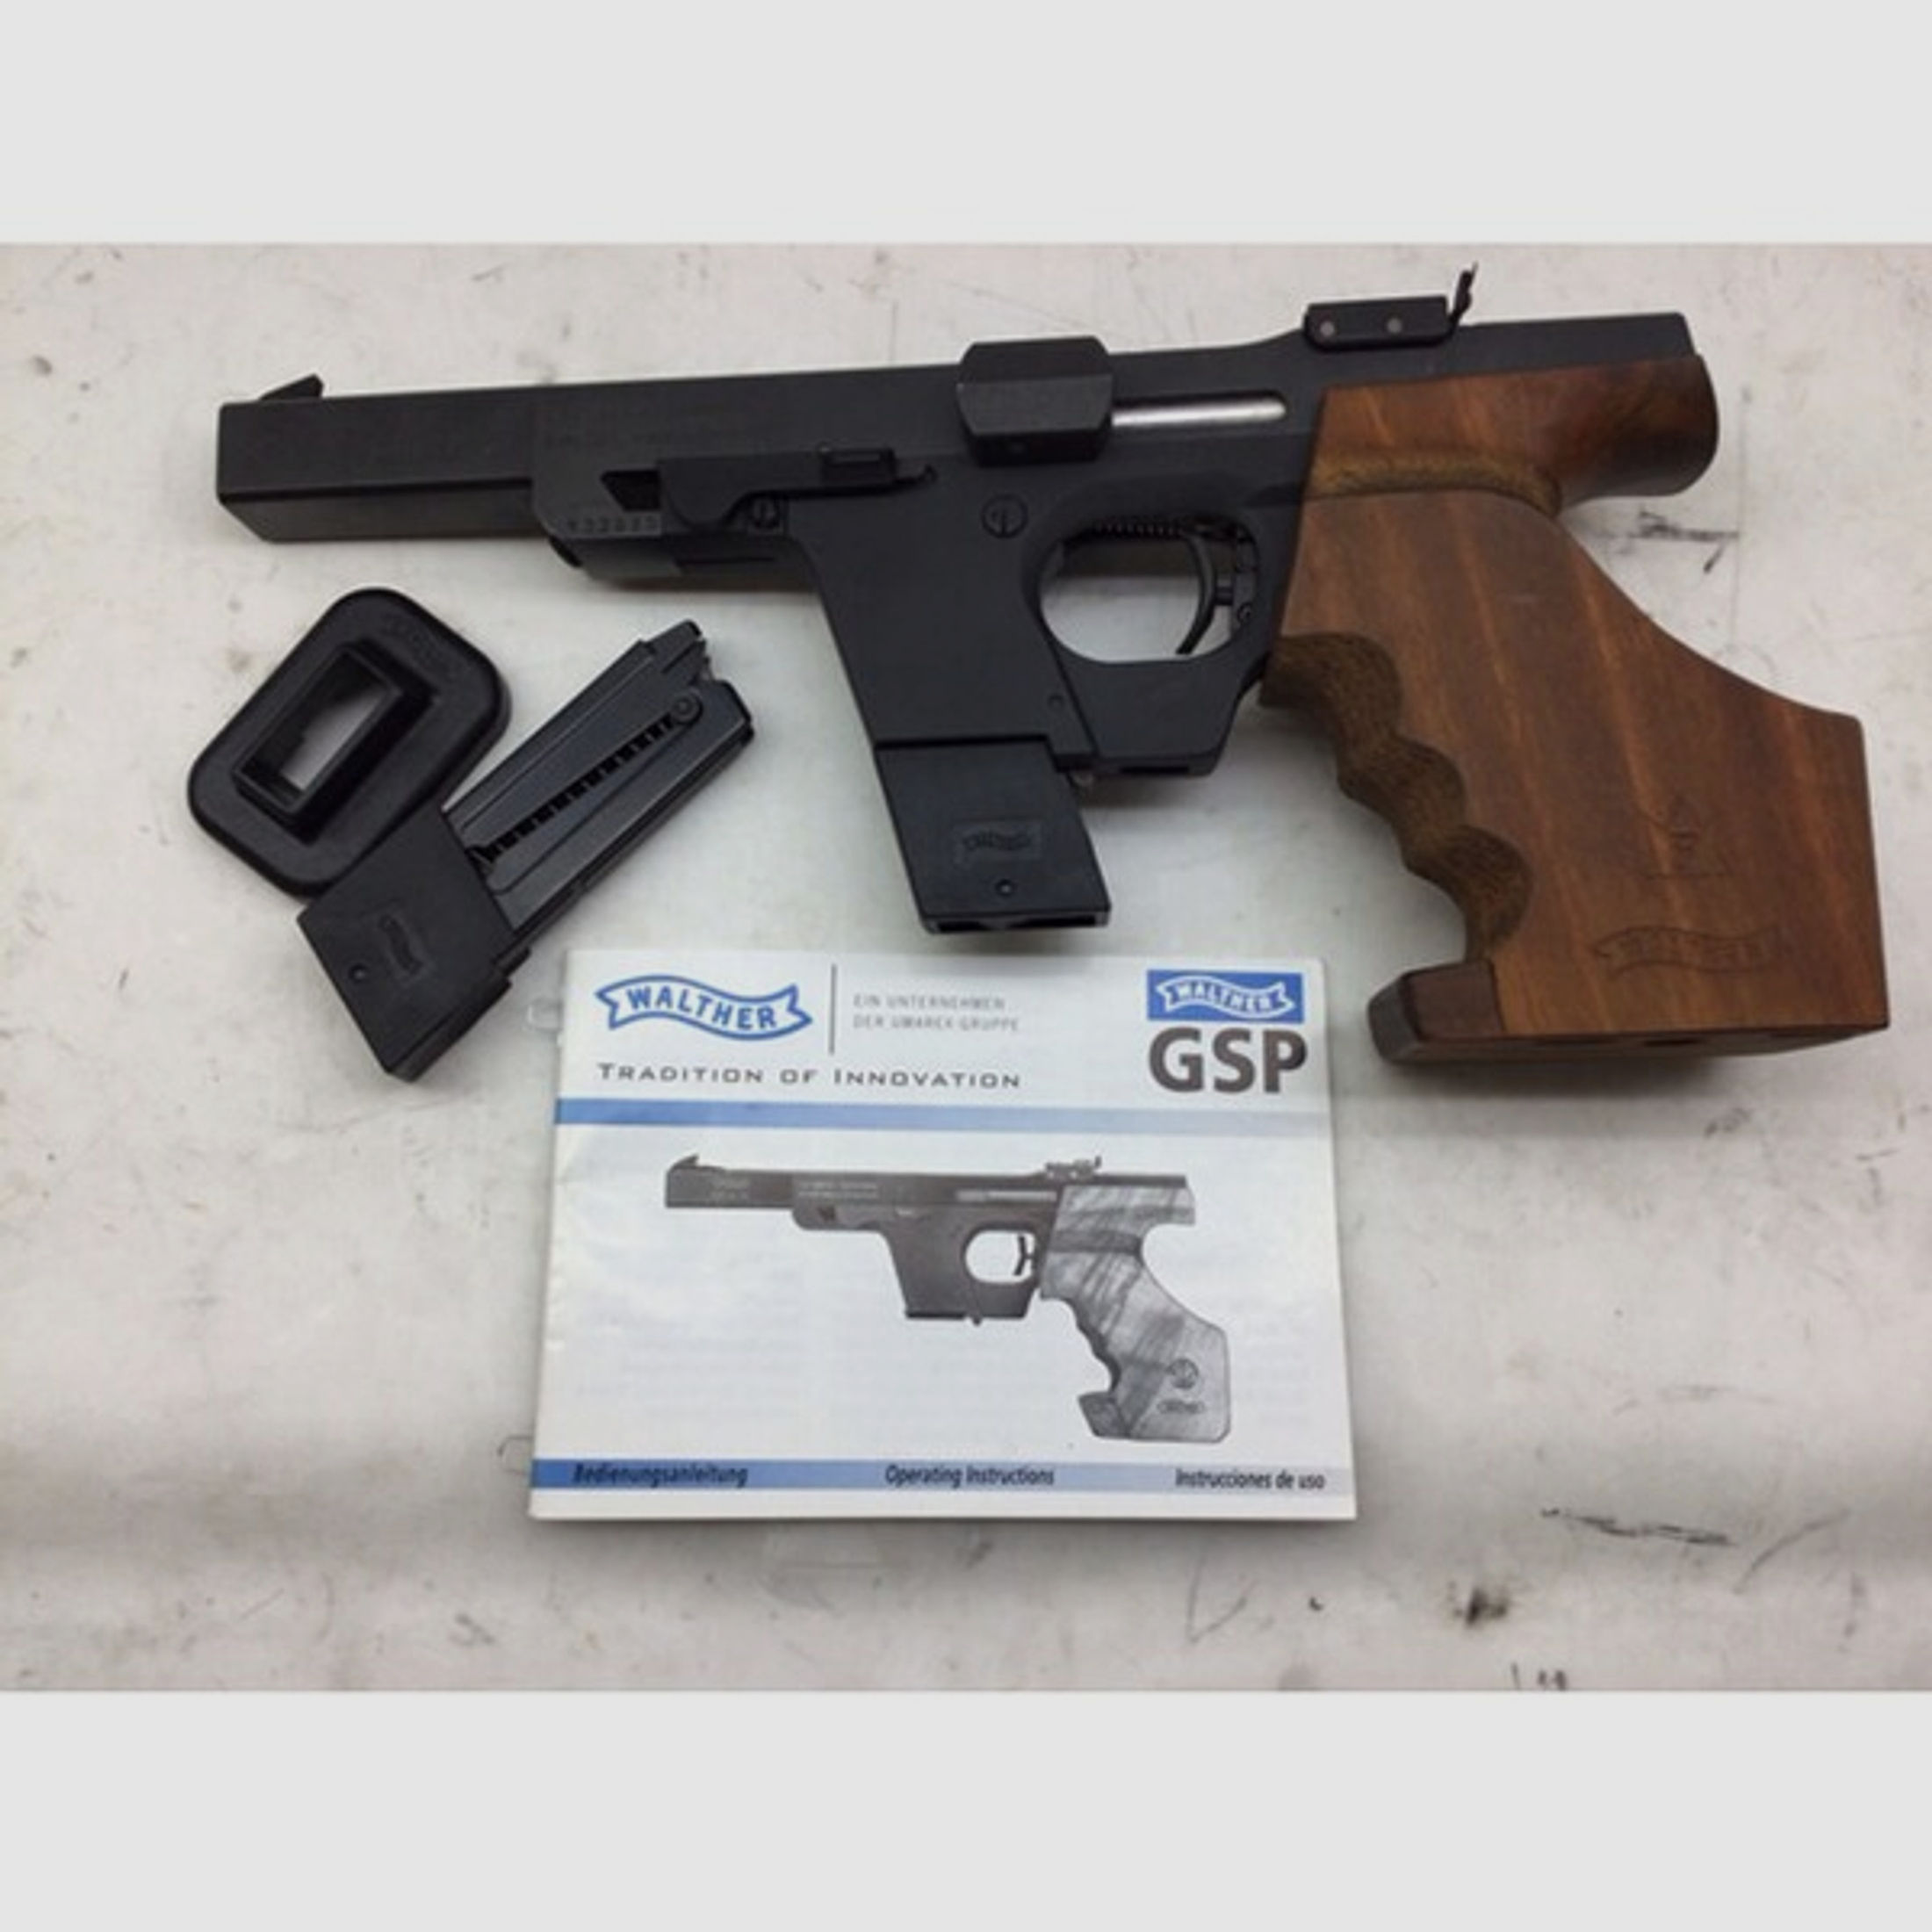 Pistole Walther Mod. GSP im Kaliber .32S&W gebraucht